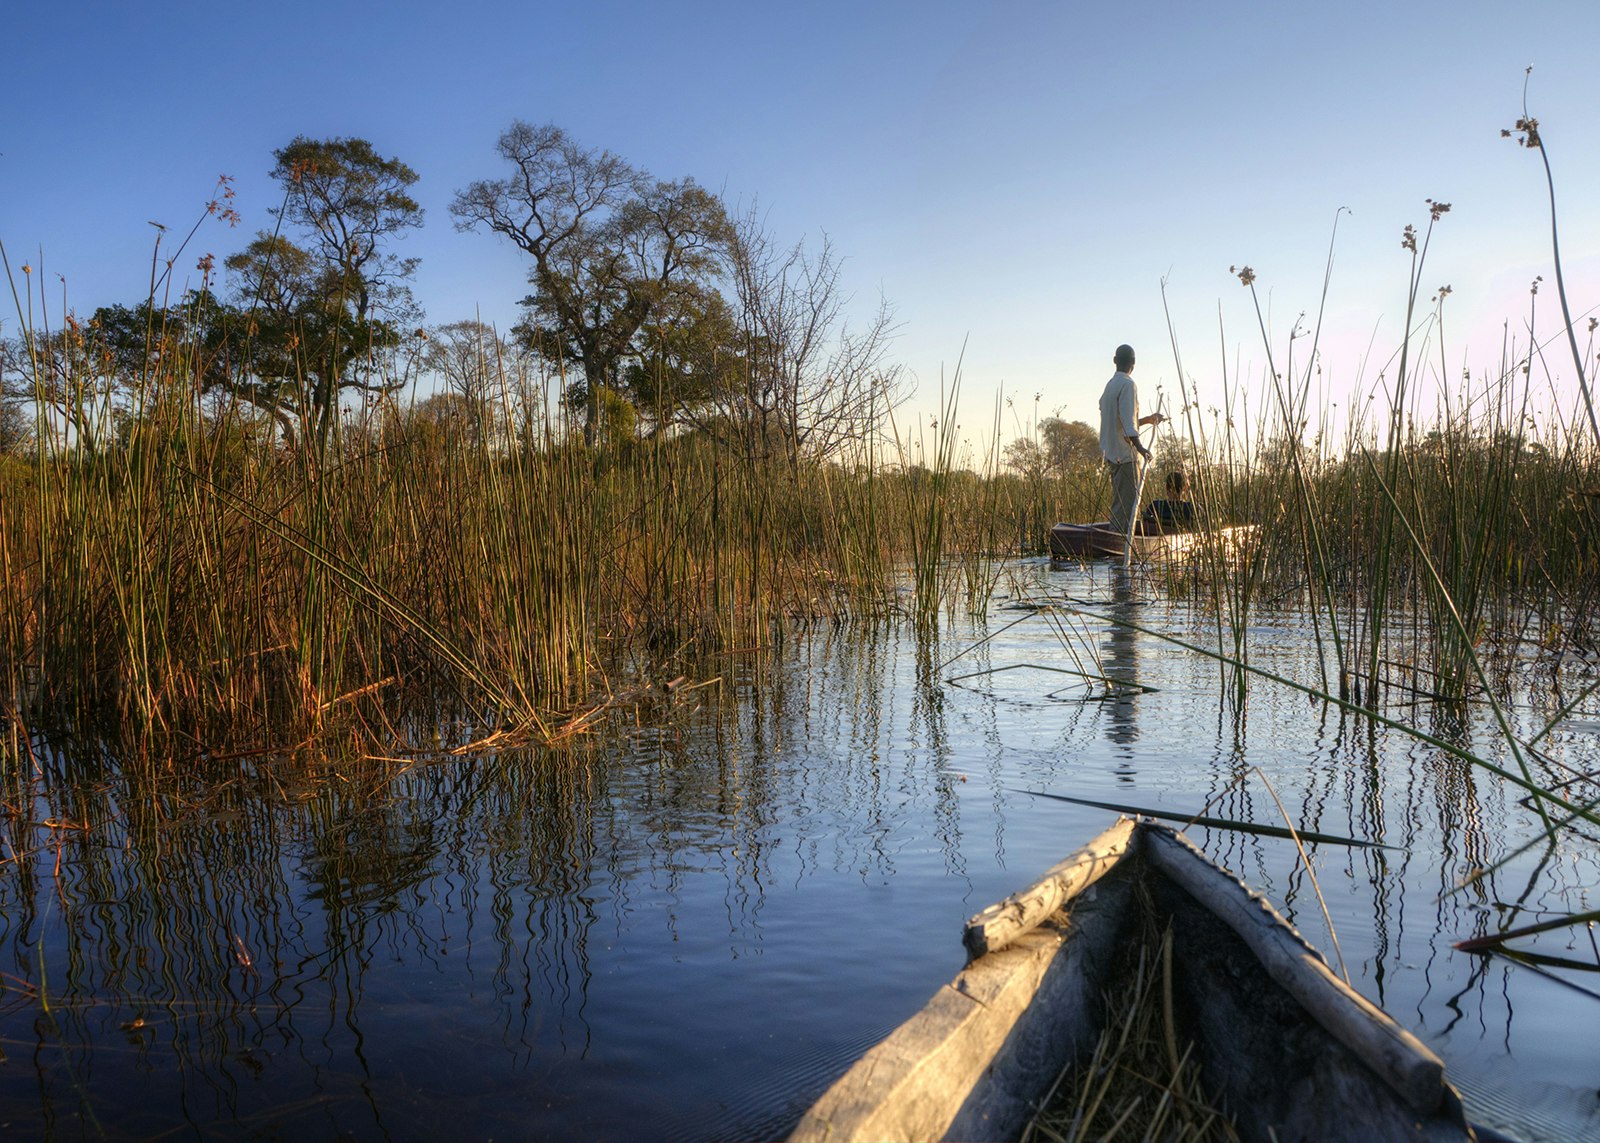 A boat trip in the Okavango Delta, Botswana © PlusONE / Shutterstock